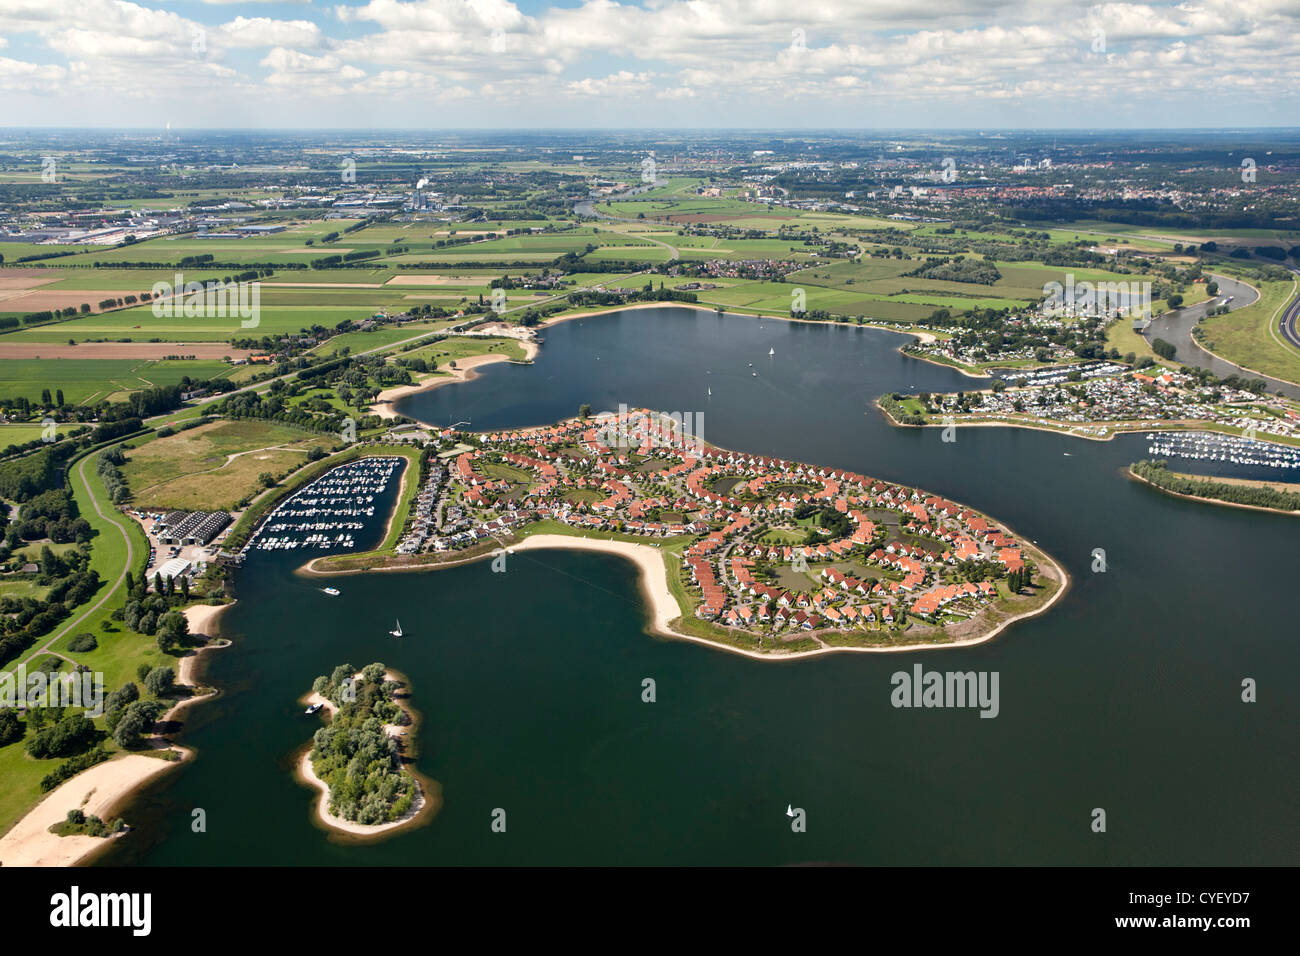 Den Niederlanden, Rheden. Luxuriöser Bungalow Park namens River Park, liegt auf einer Halbinsel in einem neu geschaffenen See. Stockfoto